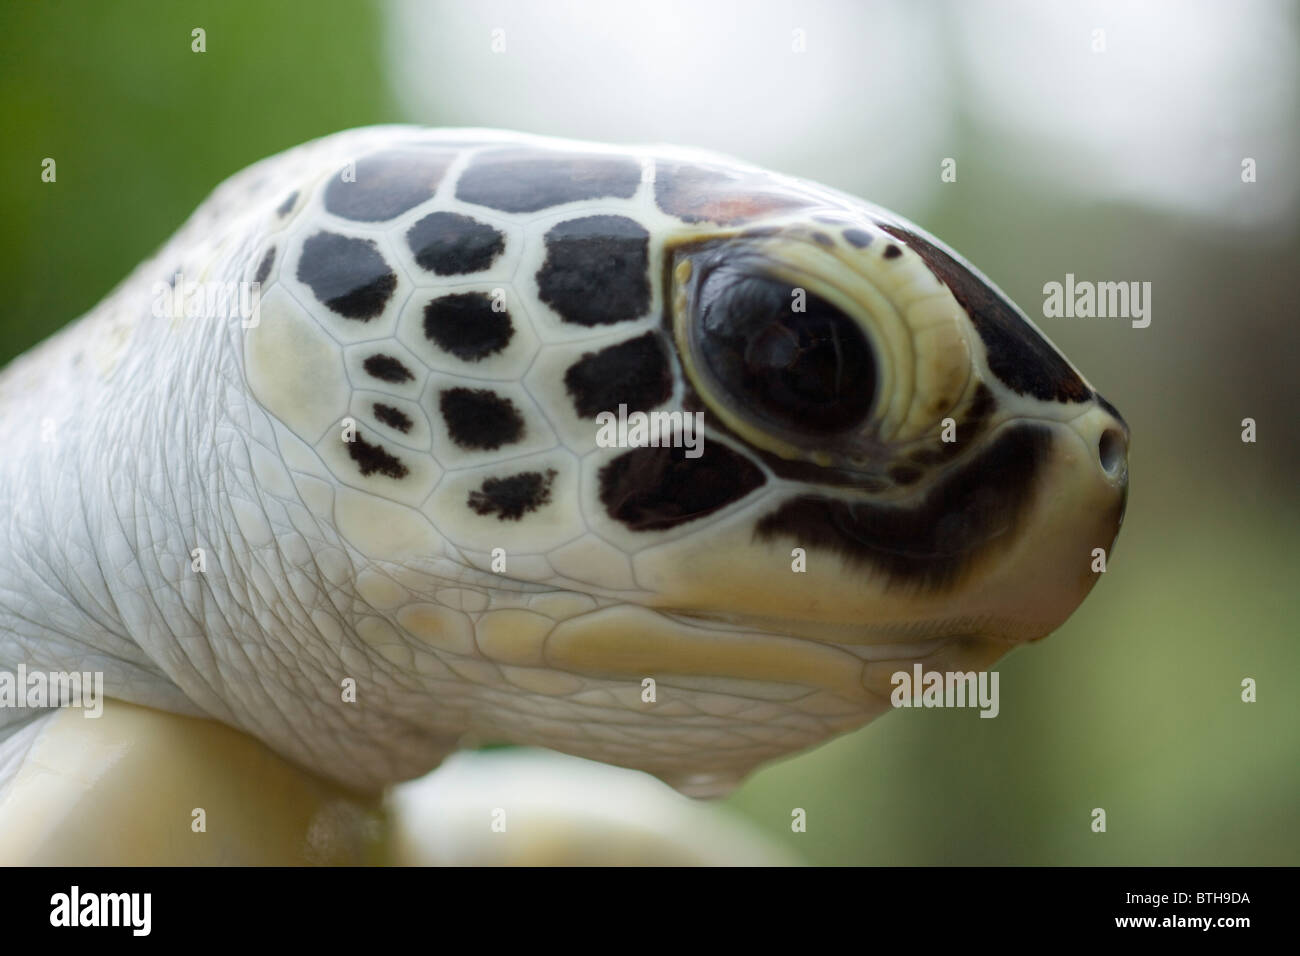 Suppenschildkröte (Chelonia Mydas). Kopf; Porträt von unreifen Tier. Stockfoto